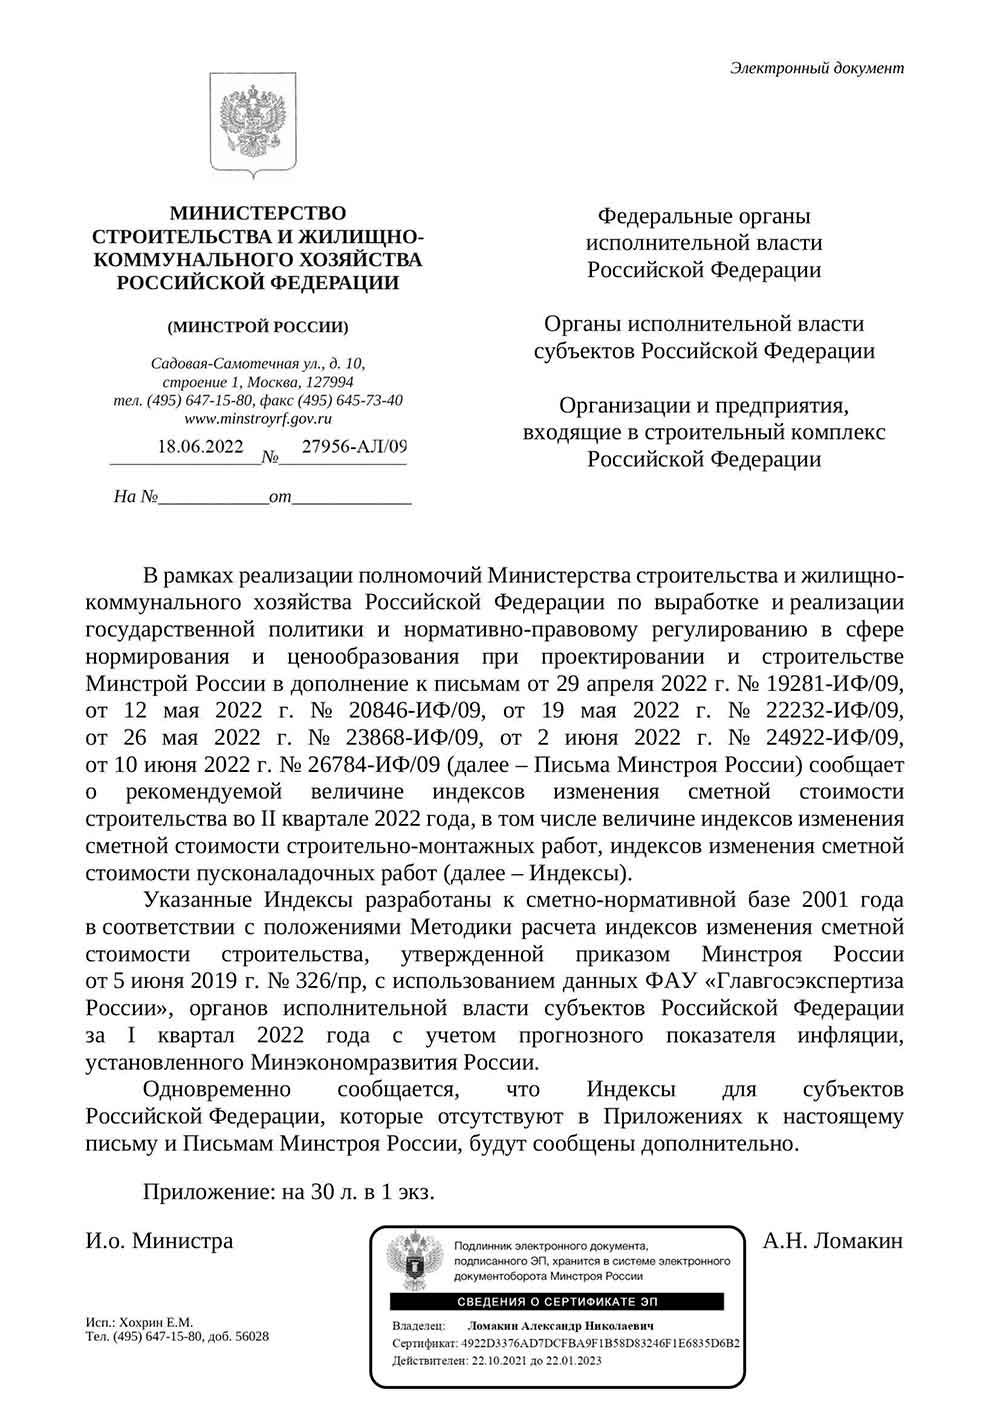 Письмо Минстроя РФ №27956-АЛ/09 от 18.06.2022 г.